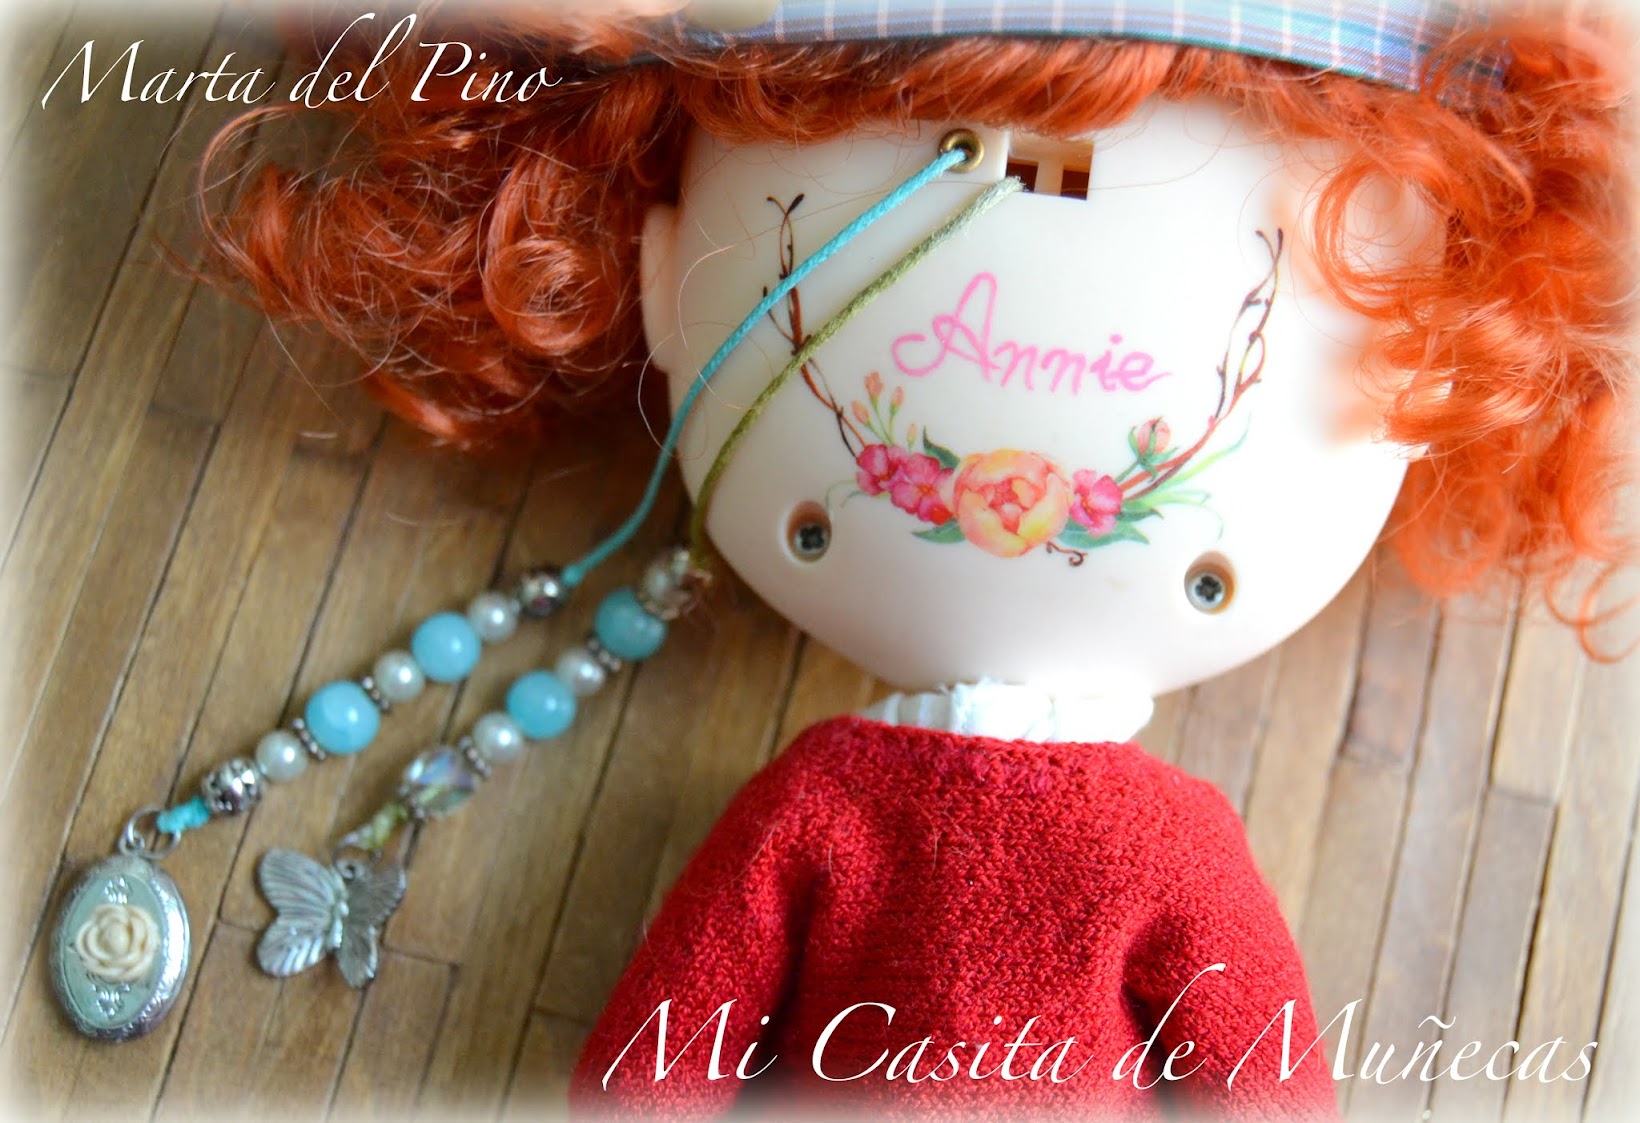 Blythe custom, blythe ooak, pullirings, eyes, scalp, carving, marta del pino, mi casita de muñecas